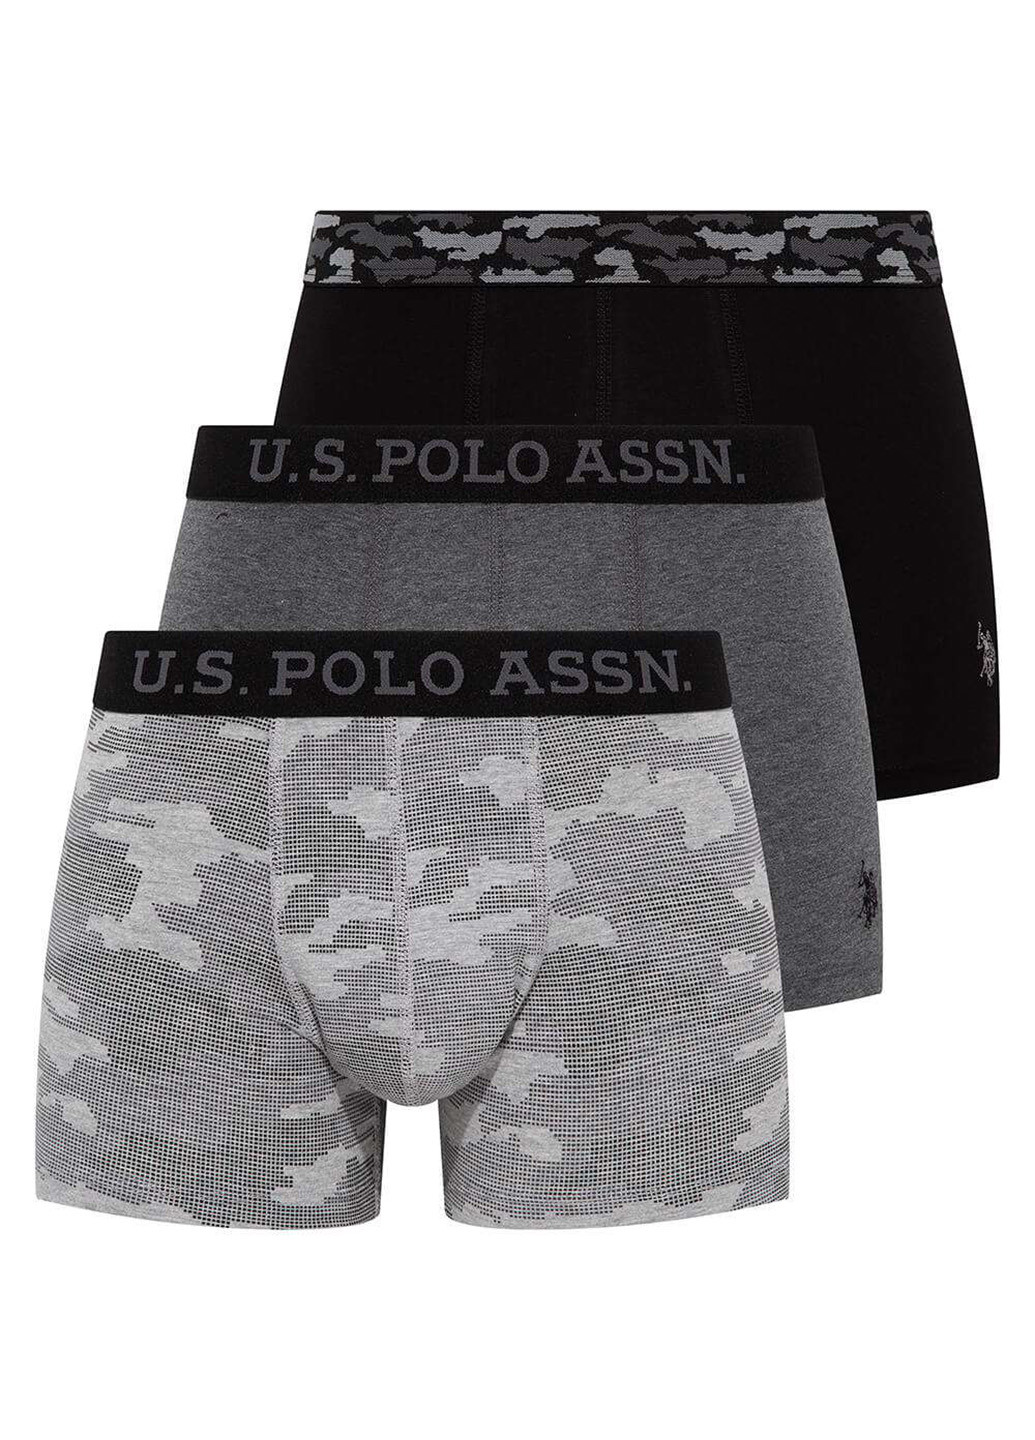 Трусы (3 шт.) U.S. Polo Assn. боксеры камуфляжные комбинированные повседневные хлопок